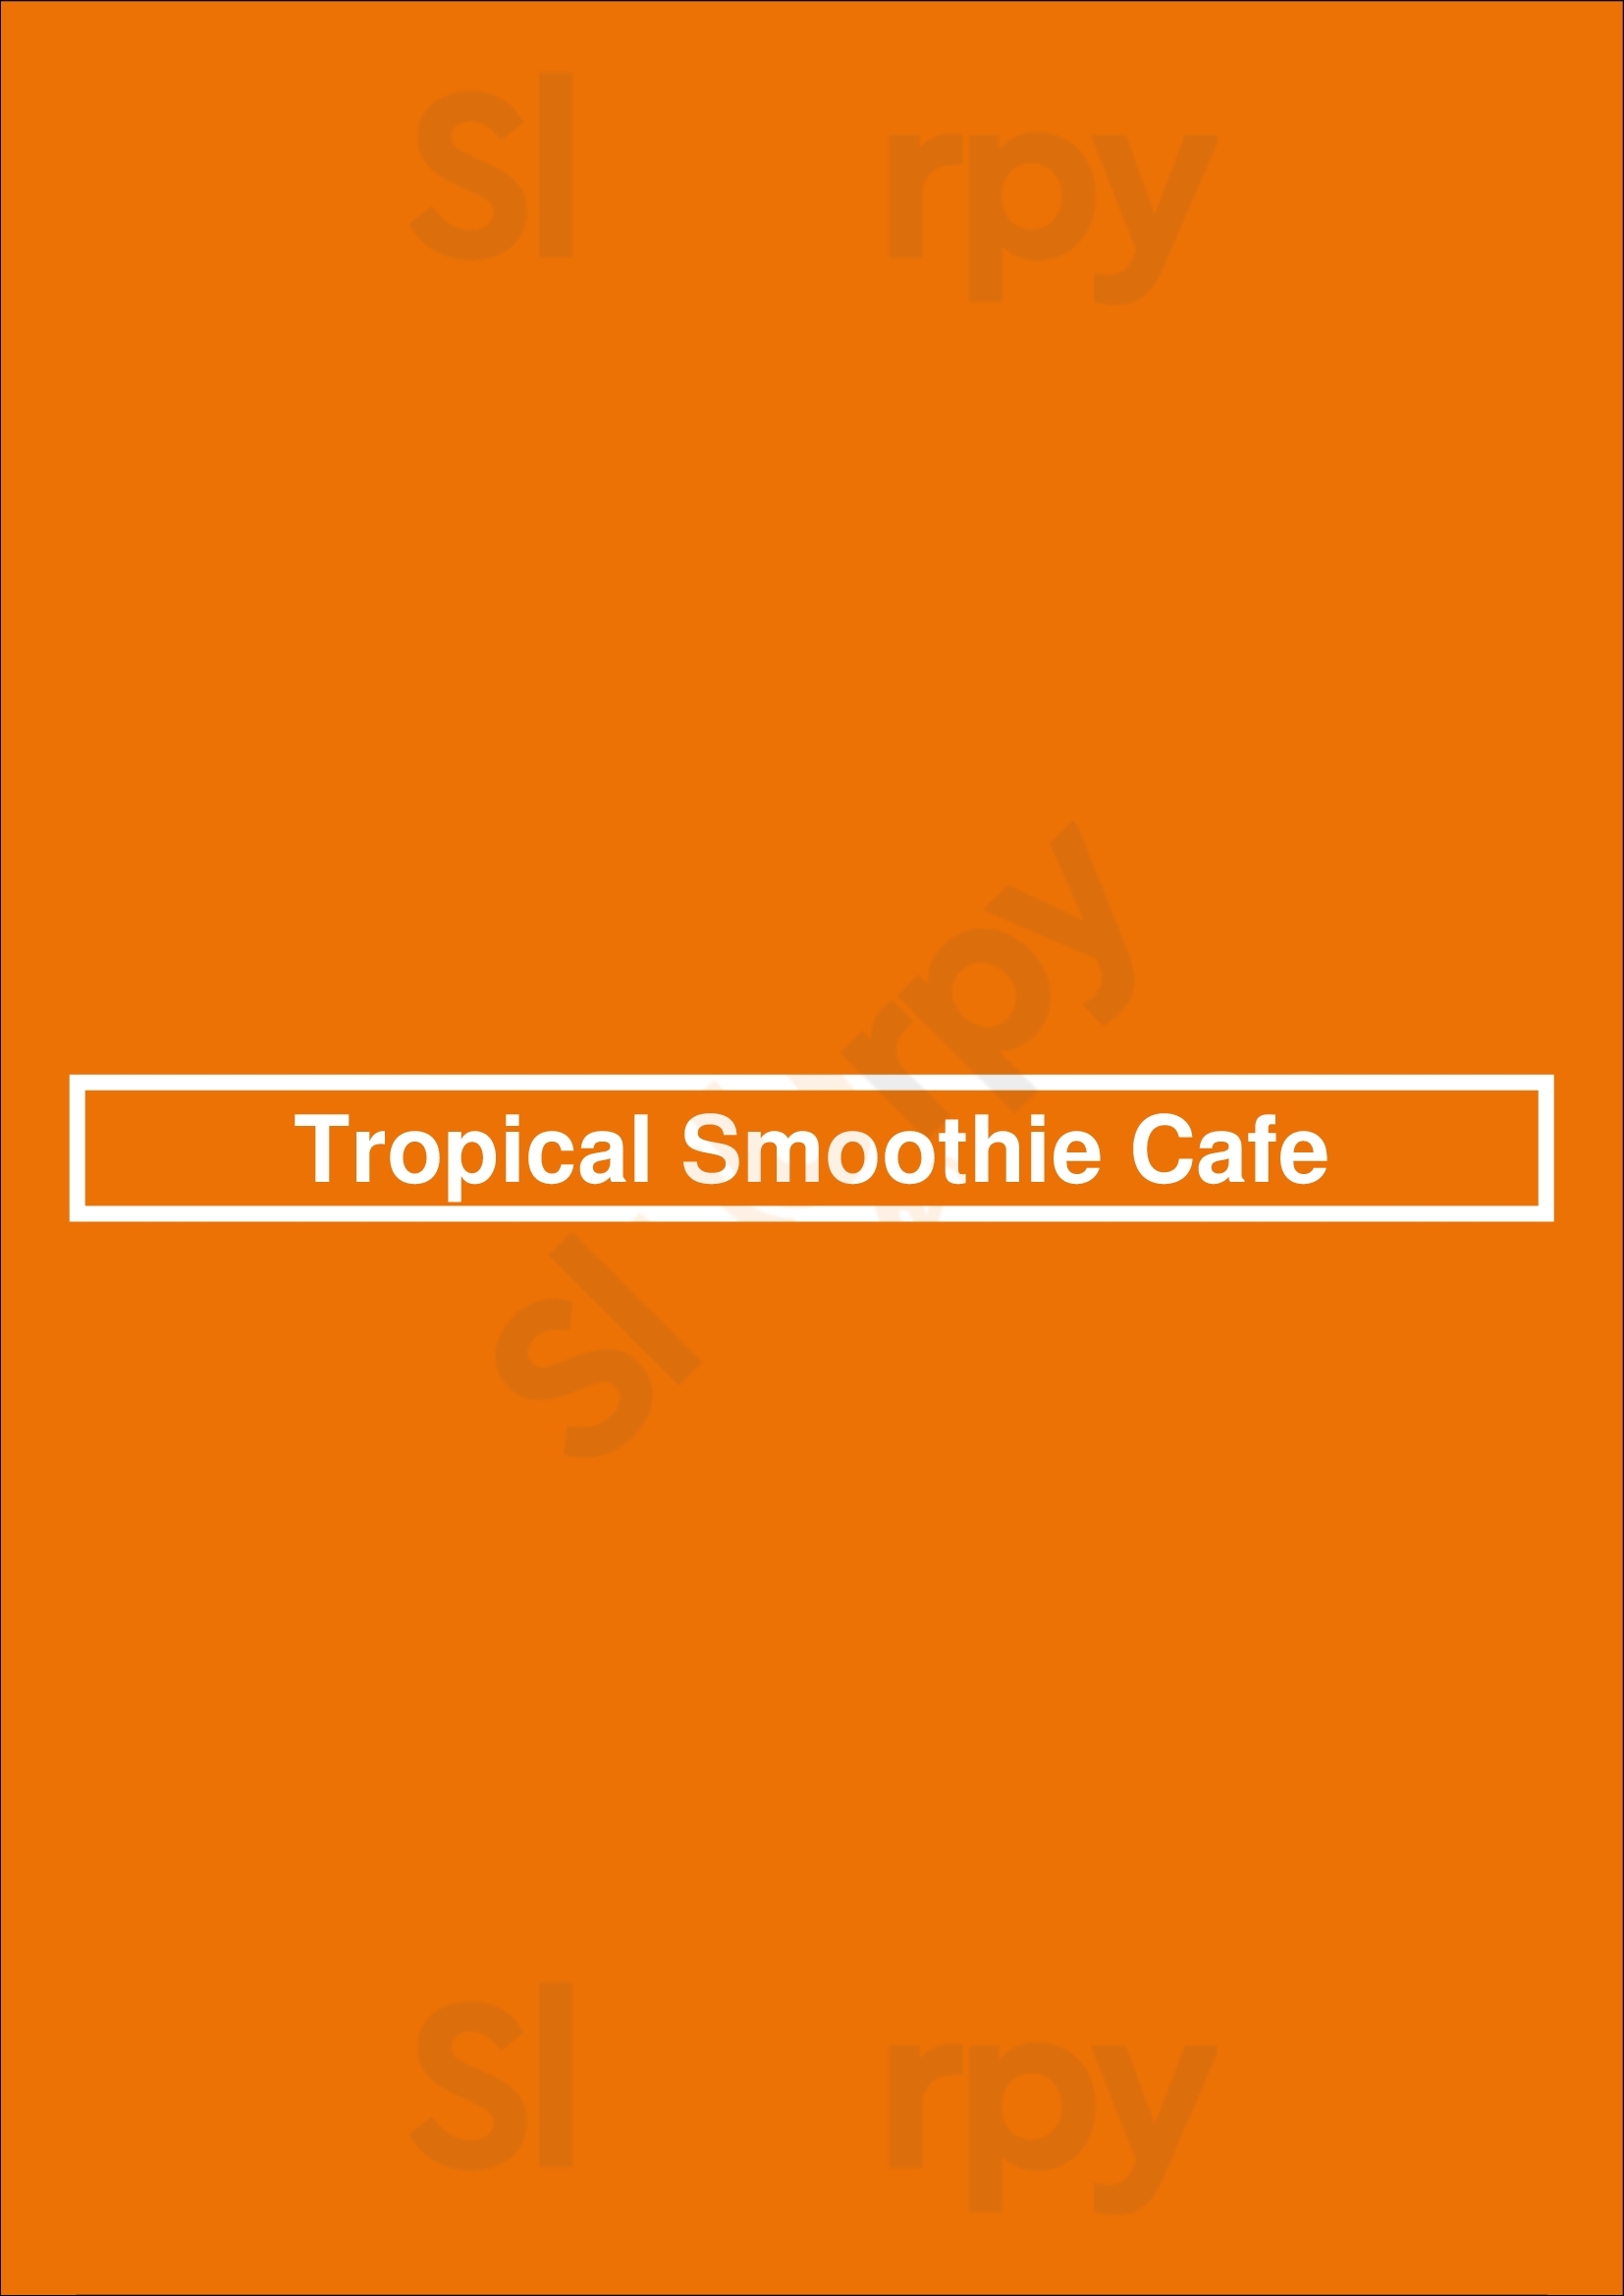 Tropical Smoothie Cafe Naples Menu - 1